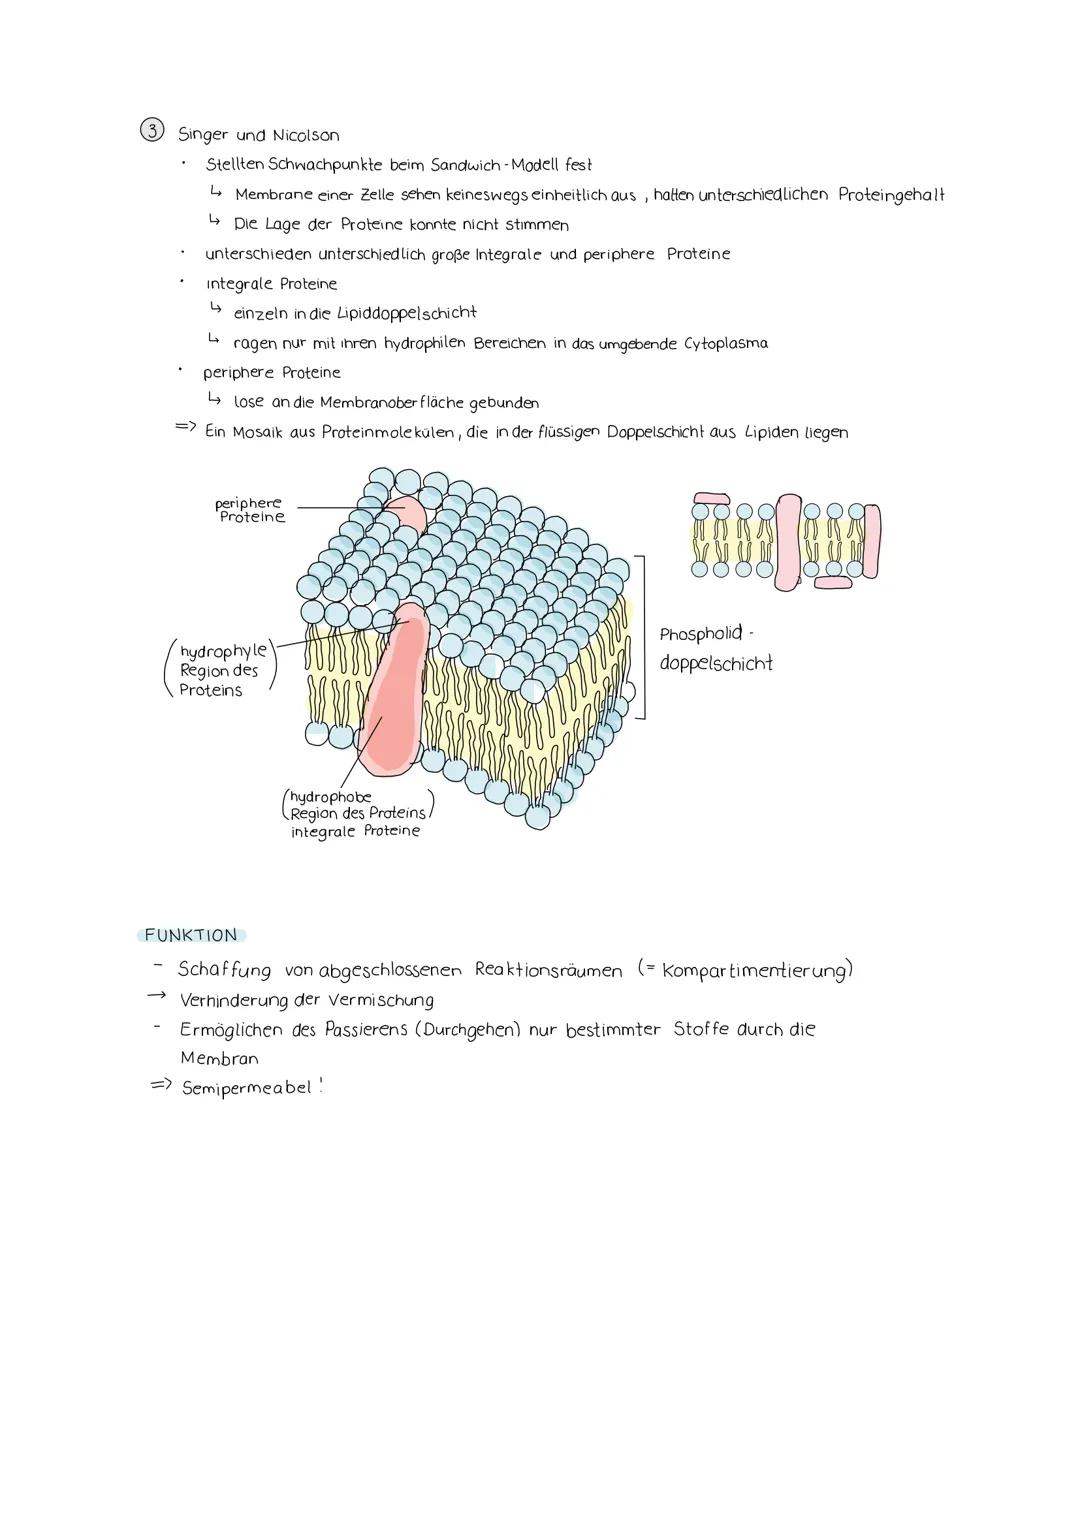 Lösung AB Osmose"
hypertonische Umgebung
(konzentrierter als innen)
außen
Durch den Wasserverlust
schrumpft der Zellkörper; die
Zellmembran 